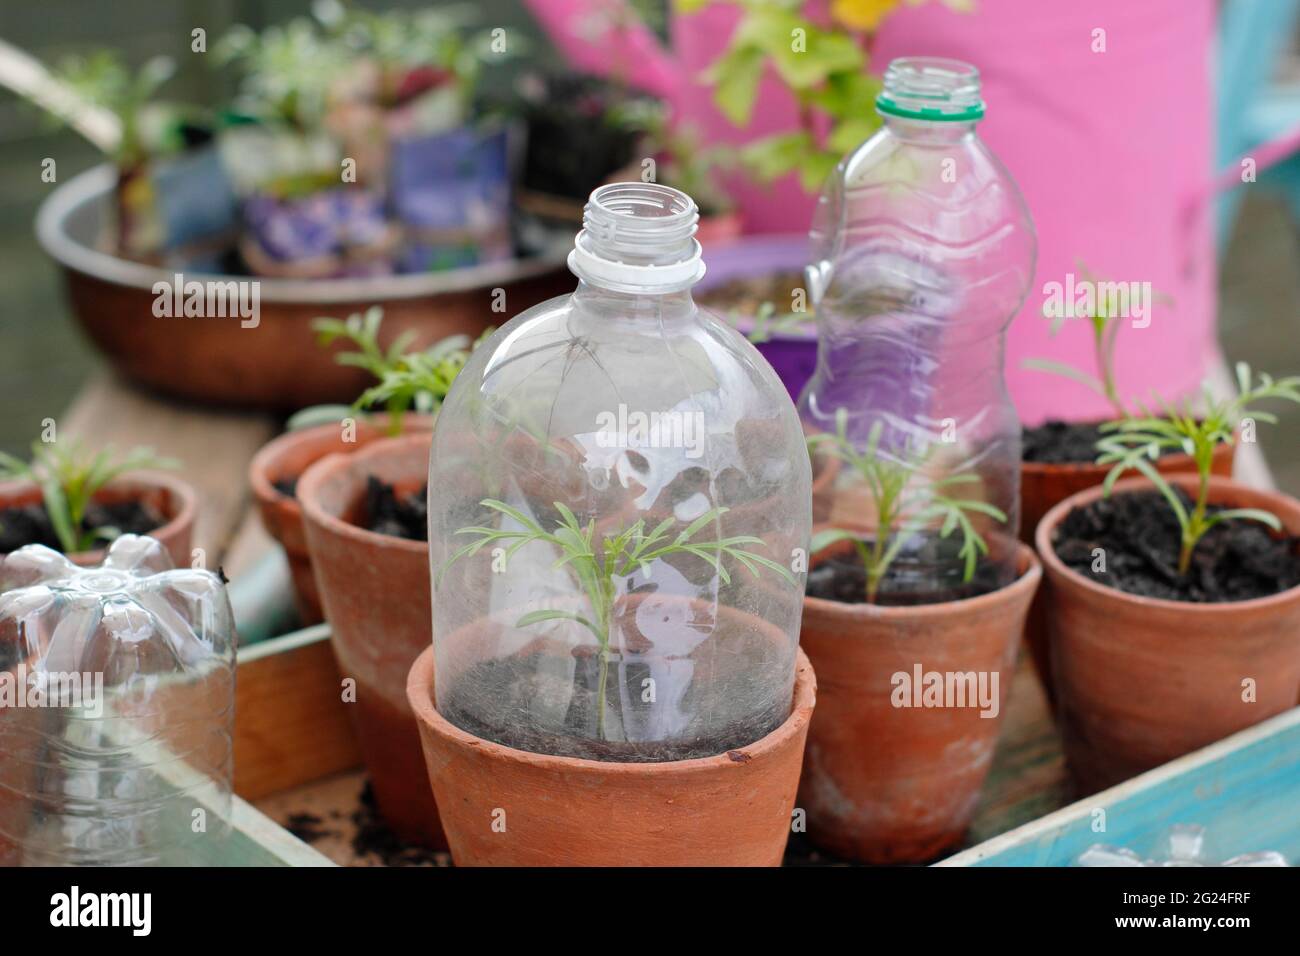 Cloche en plastique pour bouteille. Les semis protégés par des bouteilles en plastique recyclé coupées pour servir de cloche tout en permettant la ventilation. ROYAUME-UNI Banque D'Images